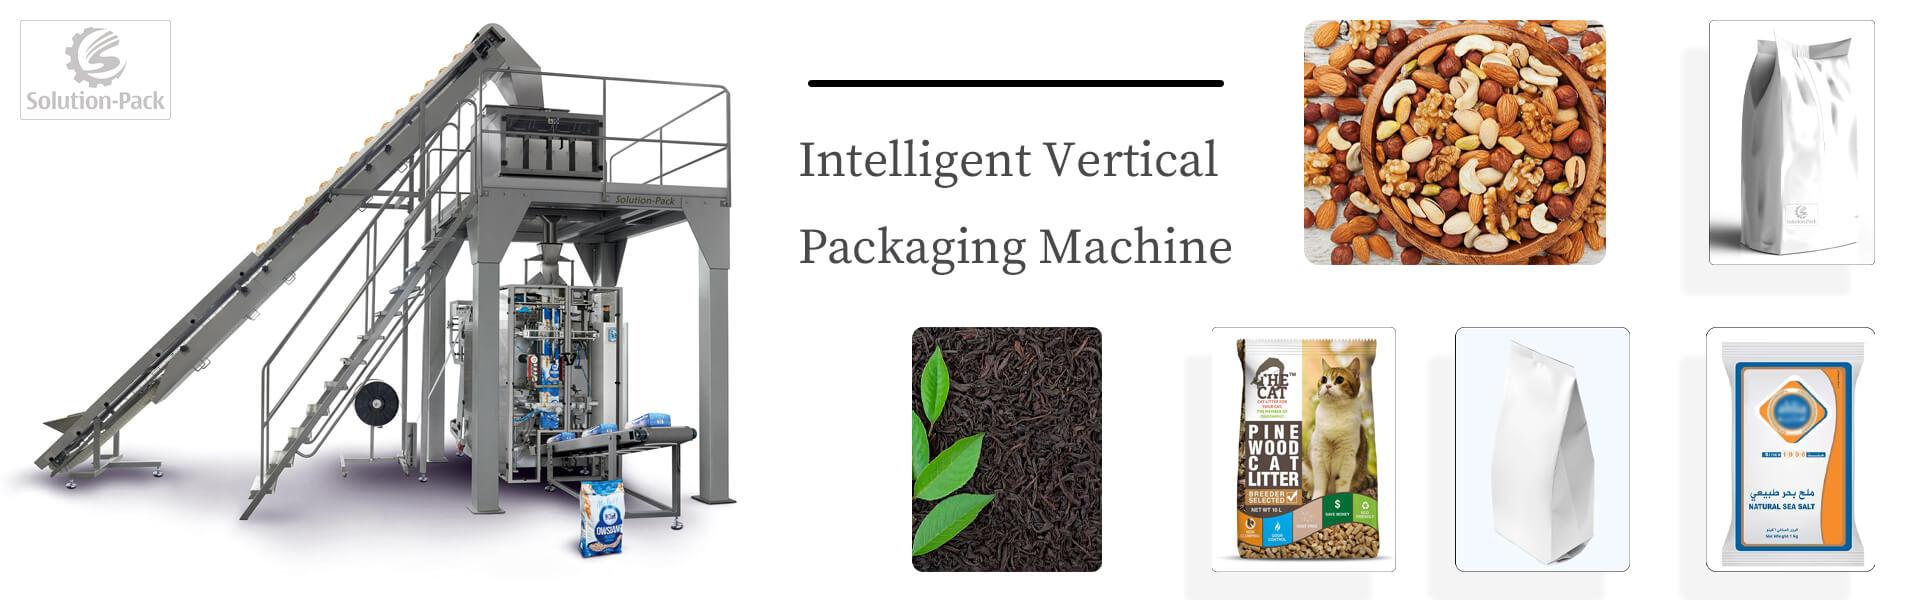 Solution-Pack | VSP520L Vertical Form Fill Seal Machine / Middle Banner